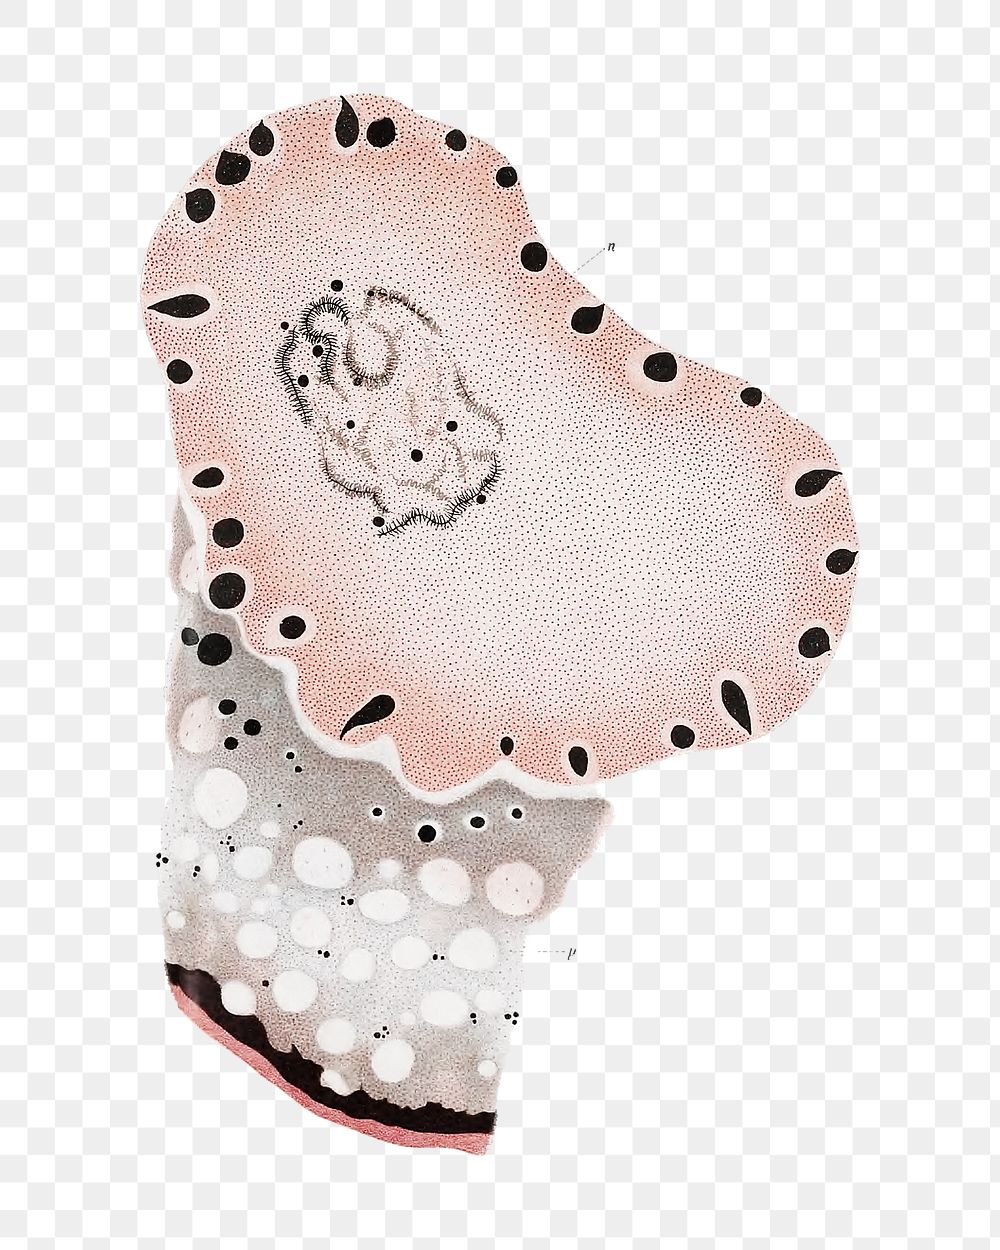 Png marine life cells illustration, transparent background